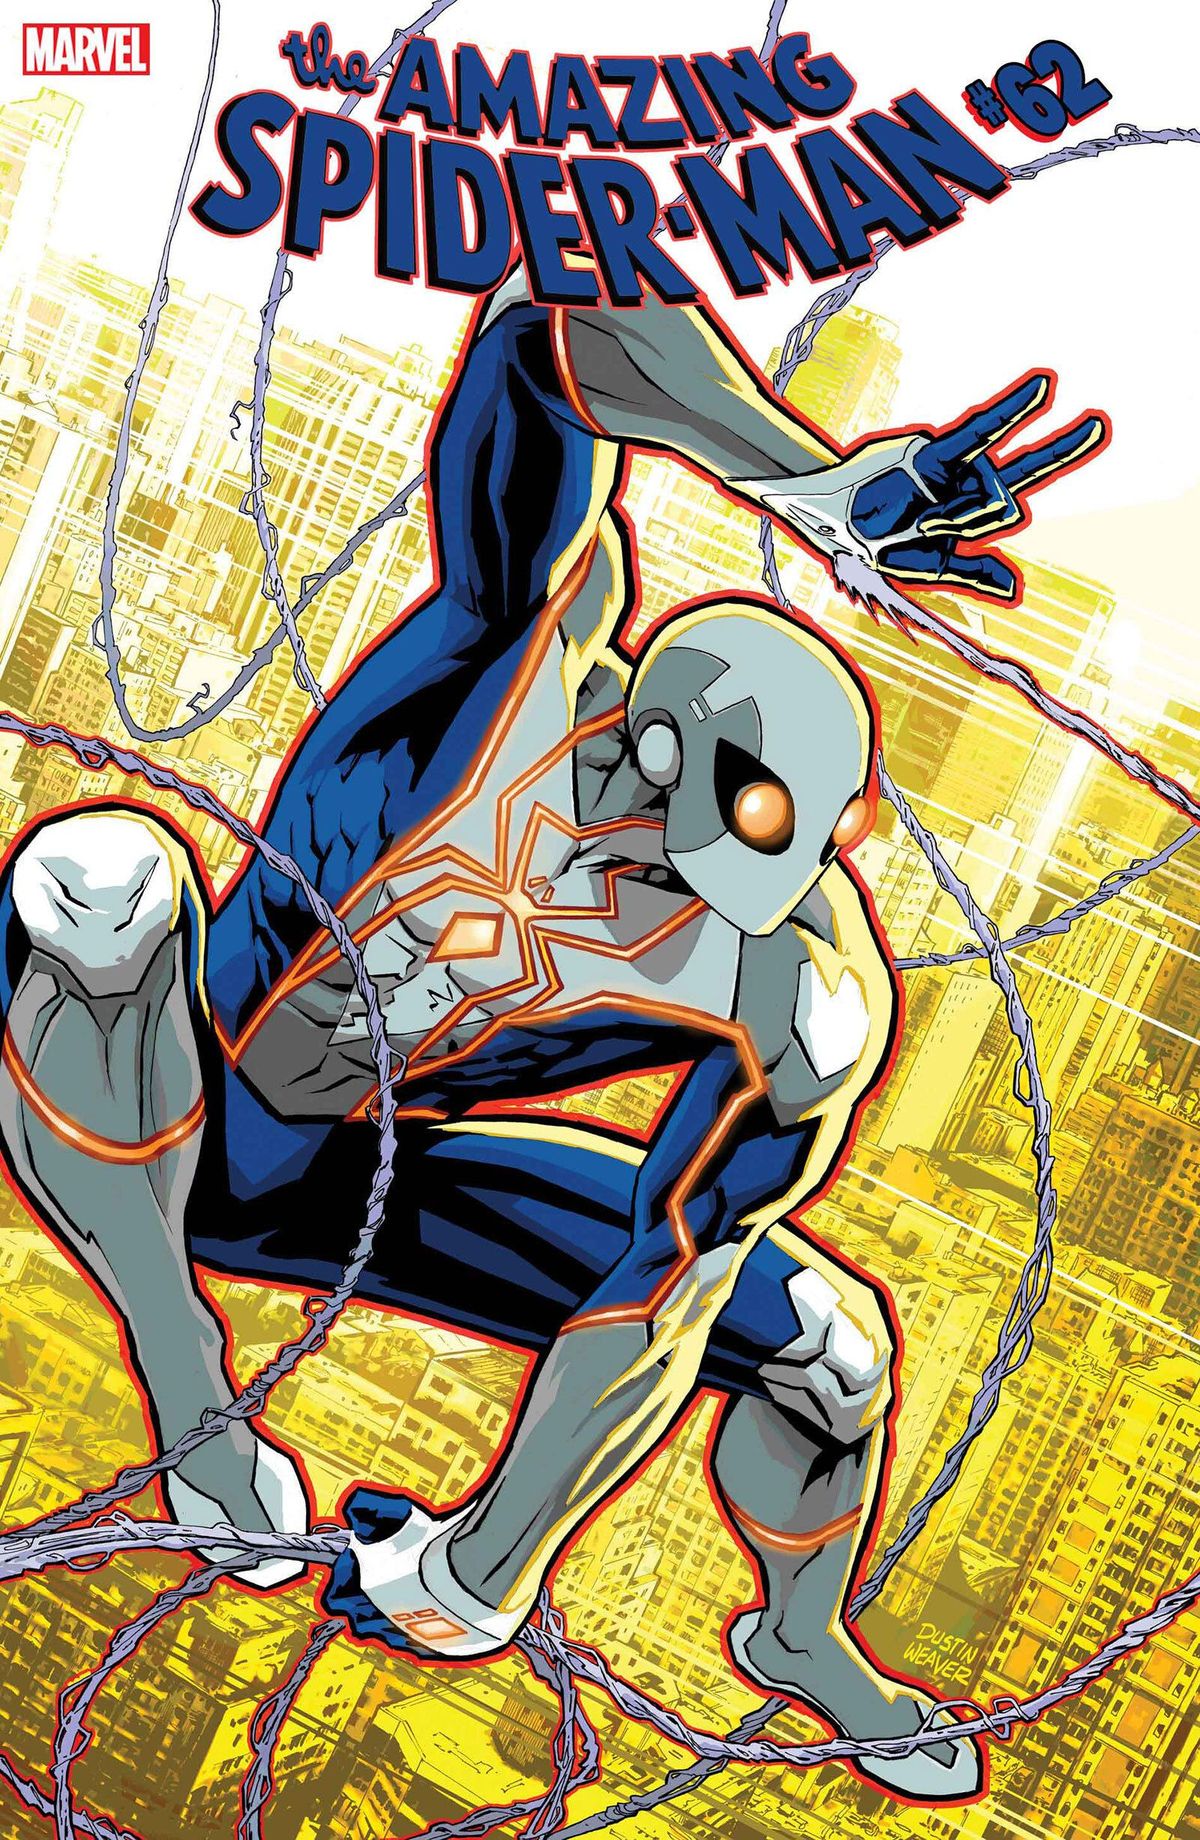 Marvel estrena el nou vestit d'alta tecnologia de Spider-Man